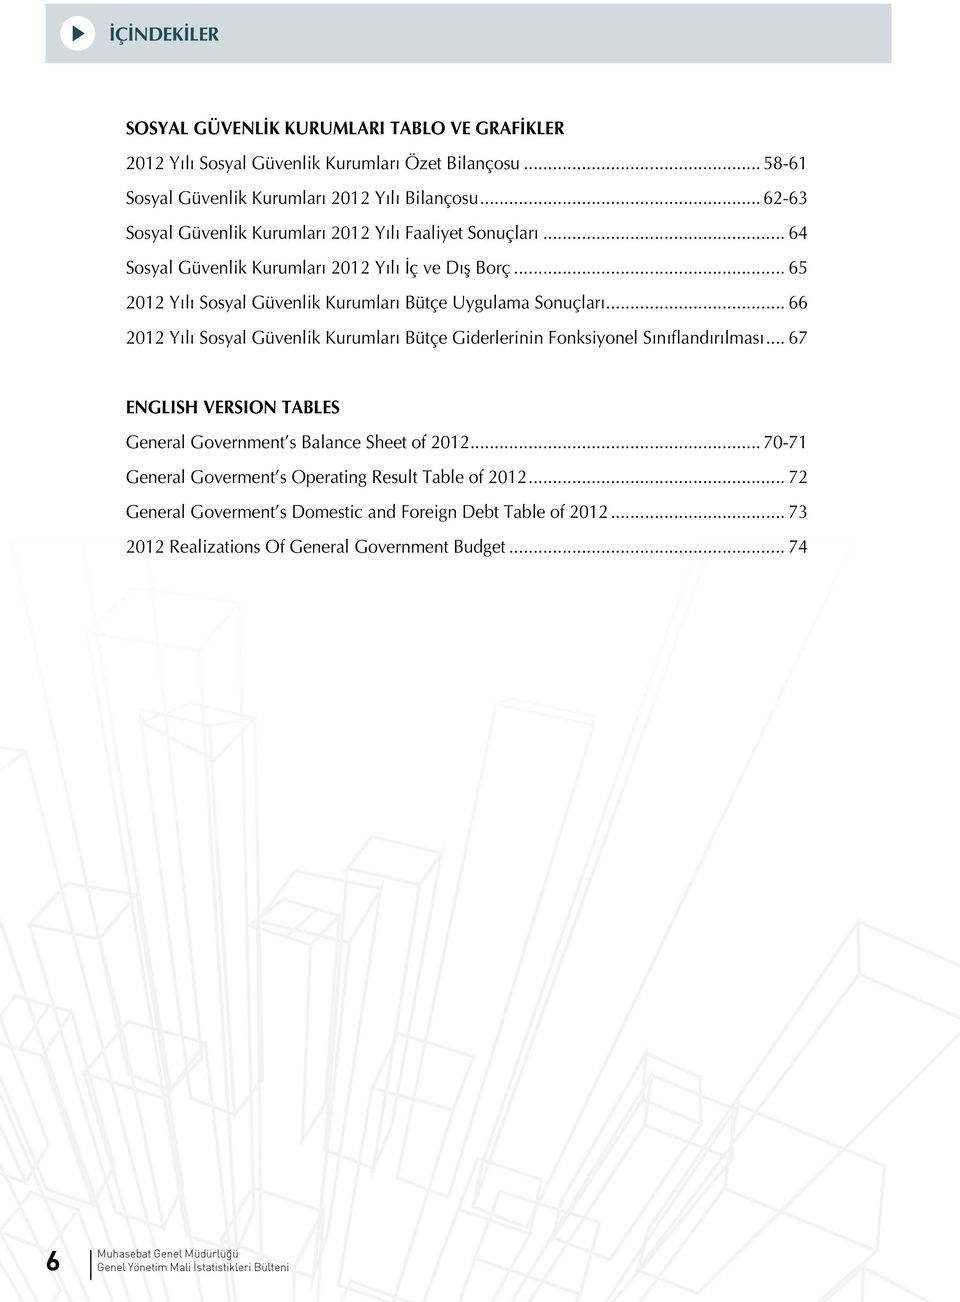 .. 66 2012 Yılı Sosyal Güvenlik Kurumları Bütçe Giderlerinin Fonksiyonel Sınıflandırılması... 67 ENGLISH VERSION TABLES General Government s Balance Sheet of 2012.